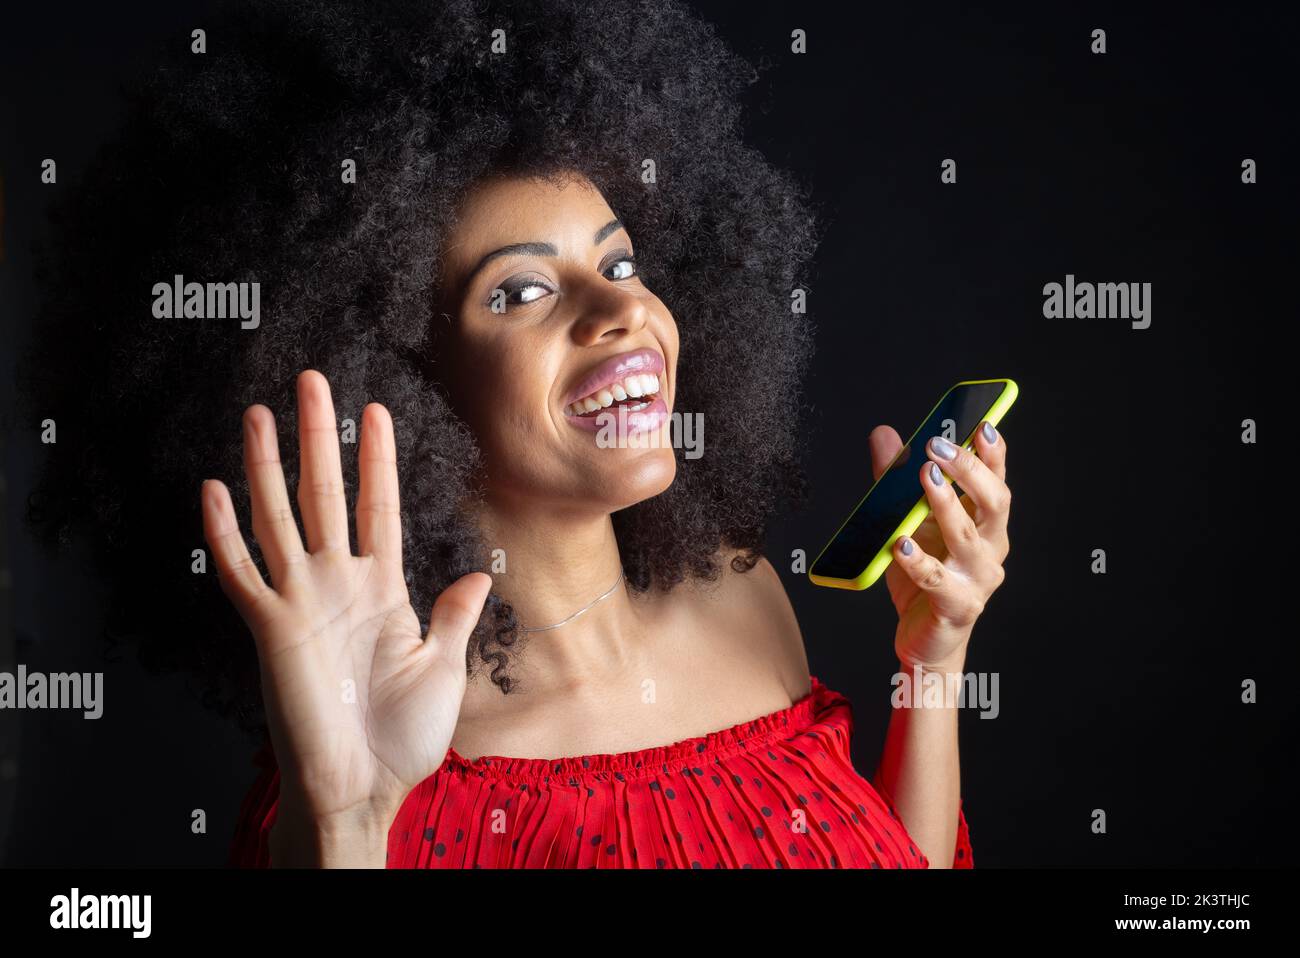 Giovane ragazza etnica allegra con cellulare e acconciatura afro dicendo ciao con mano sollevata mentre si guarda la macchina fotografica Foto Stock